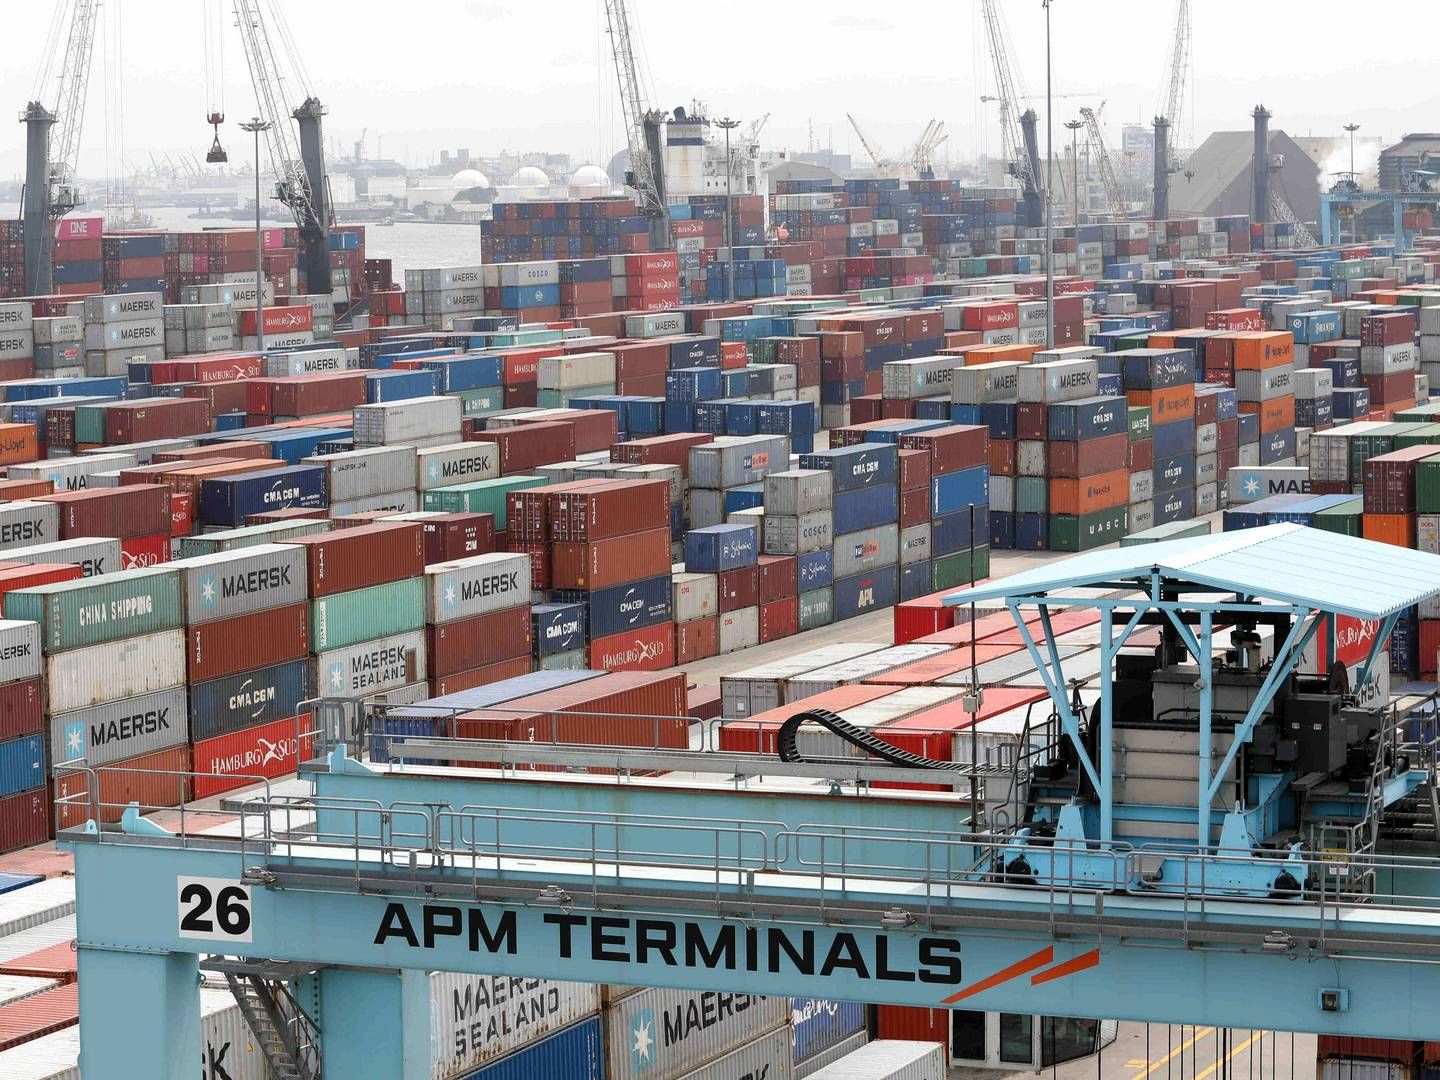 Maersks havneselskab, APM Terminals, har givet lønforhøjelse til sine ansatte i Monrovia i Liberia, efter en årelang strid om deres aflønning. | Foto: Temilade Adelaja/Reuters/Ritzau Scanpix